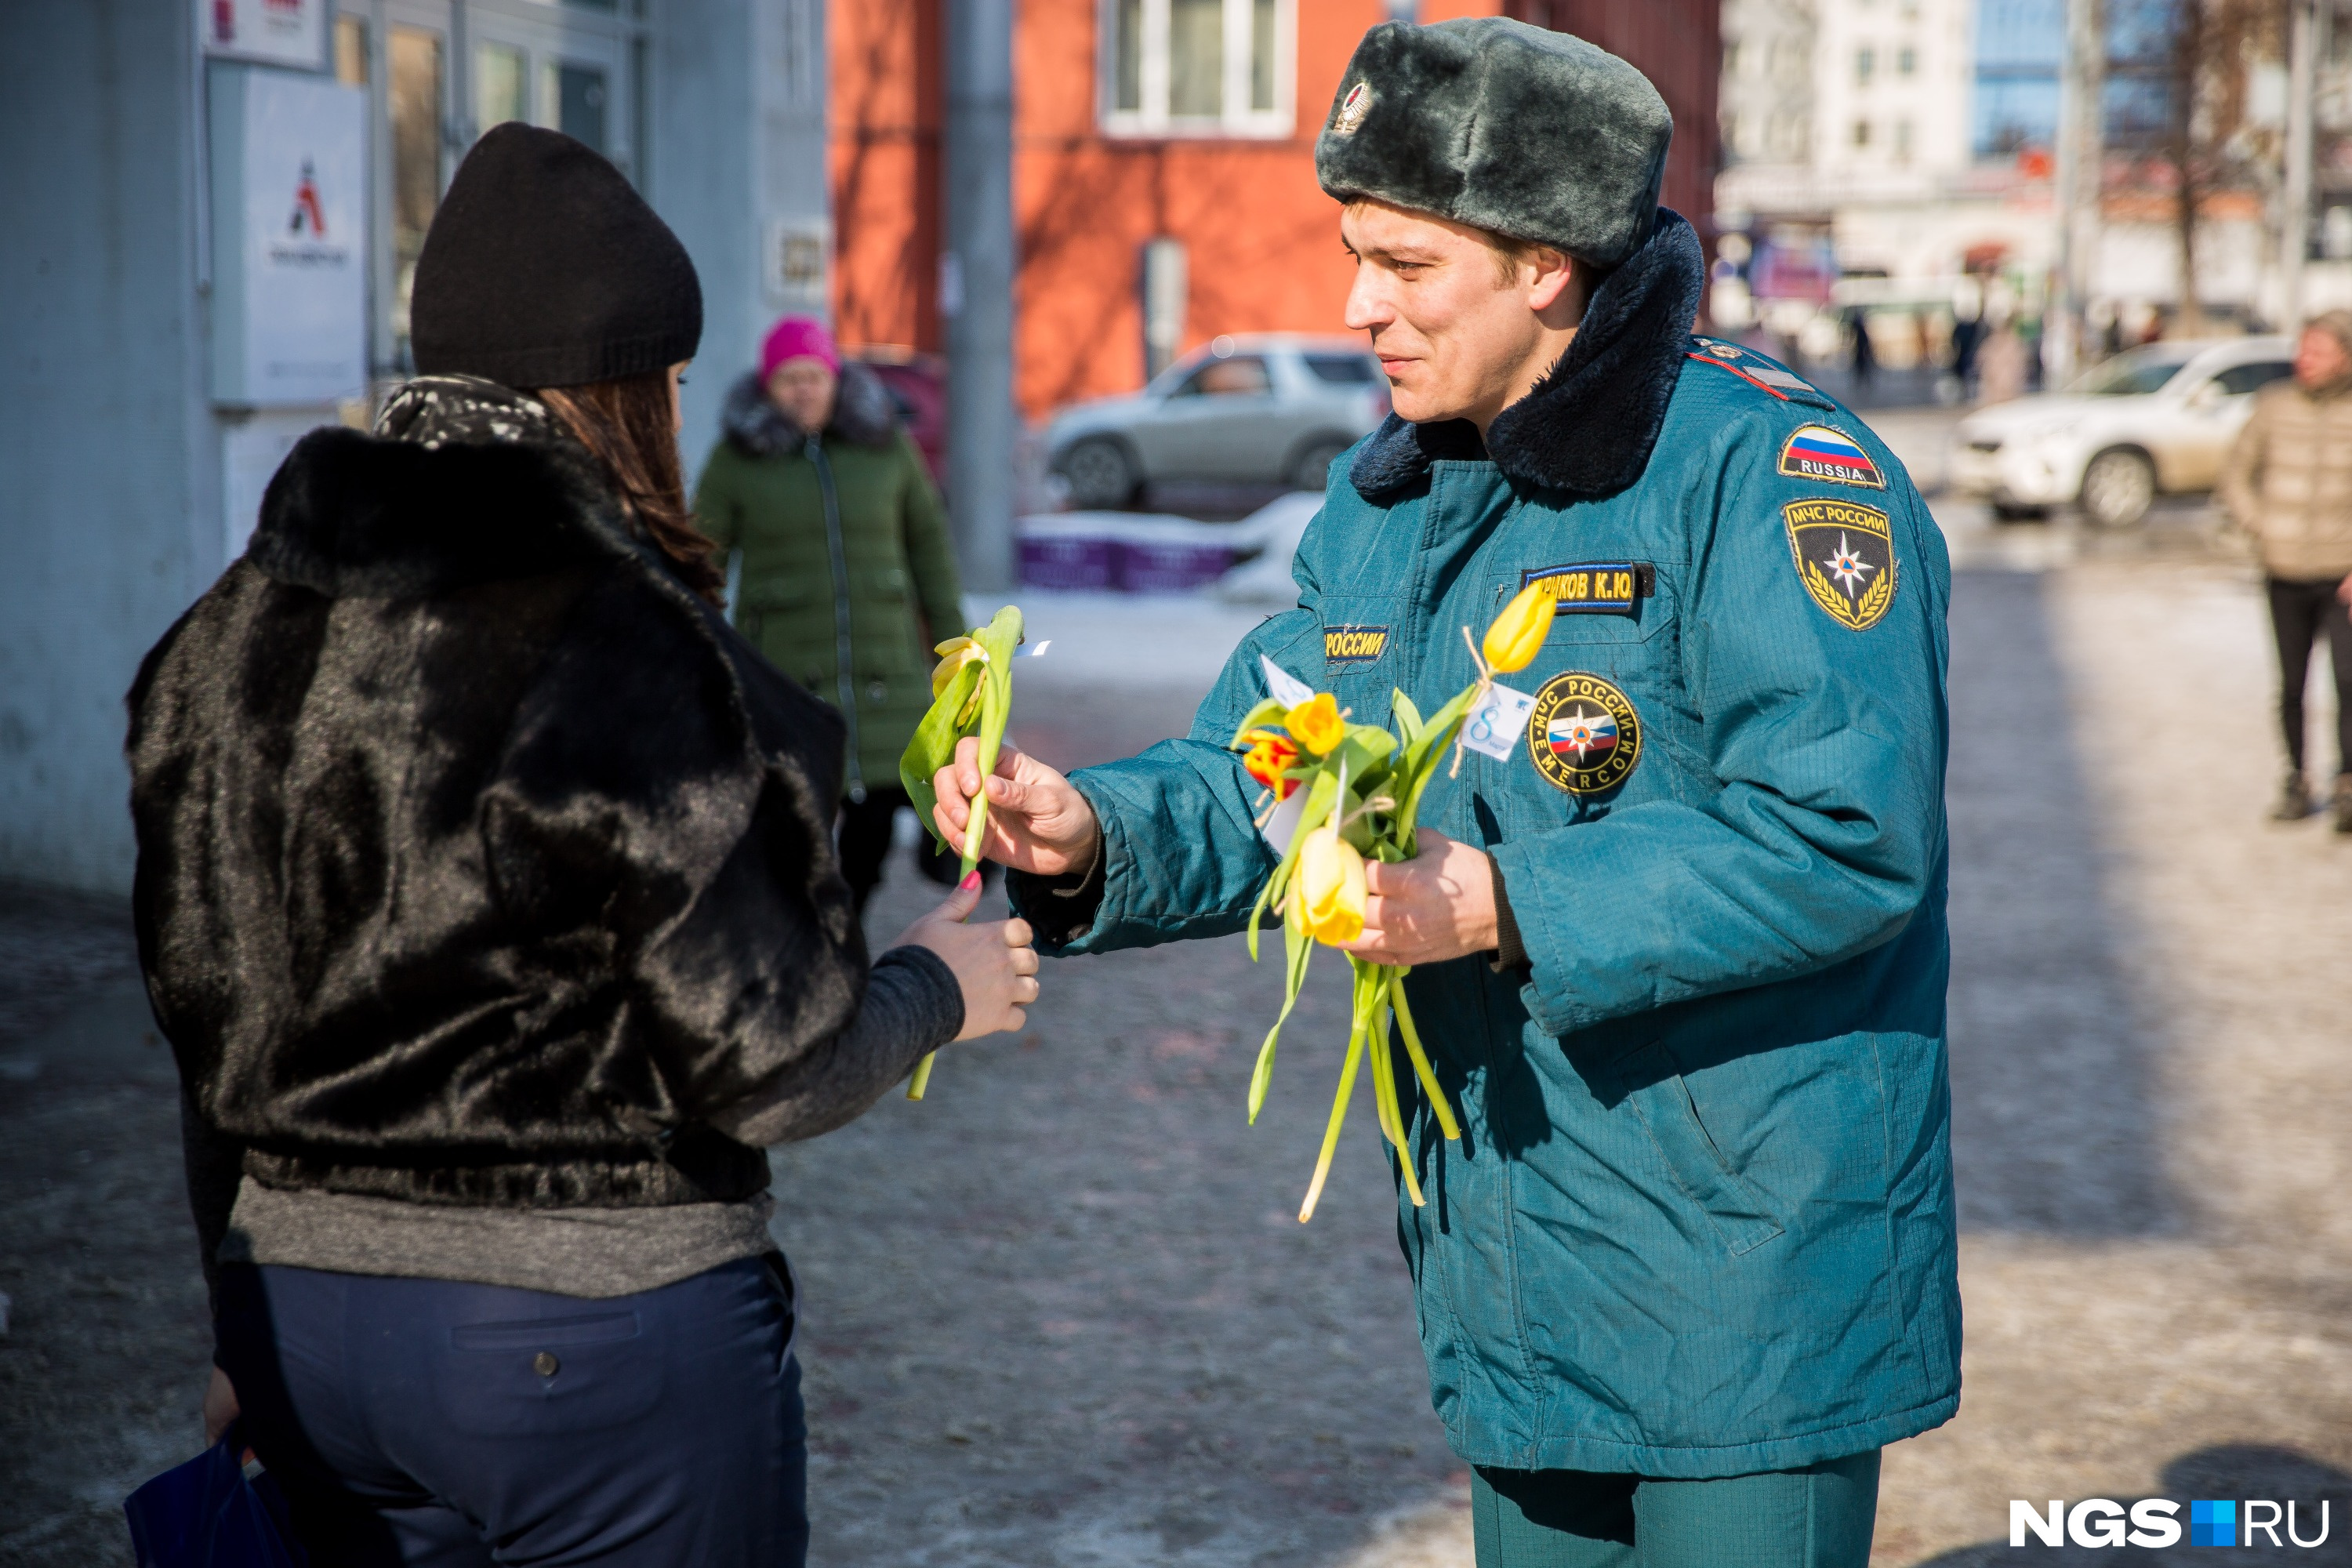 Пожарный Кирилл Чуриков дарит цветы сибирячкам на площади Ленина